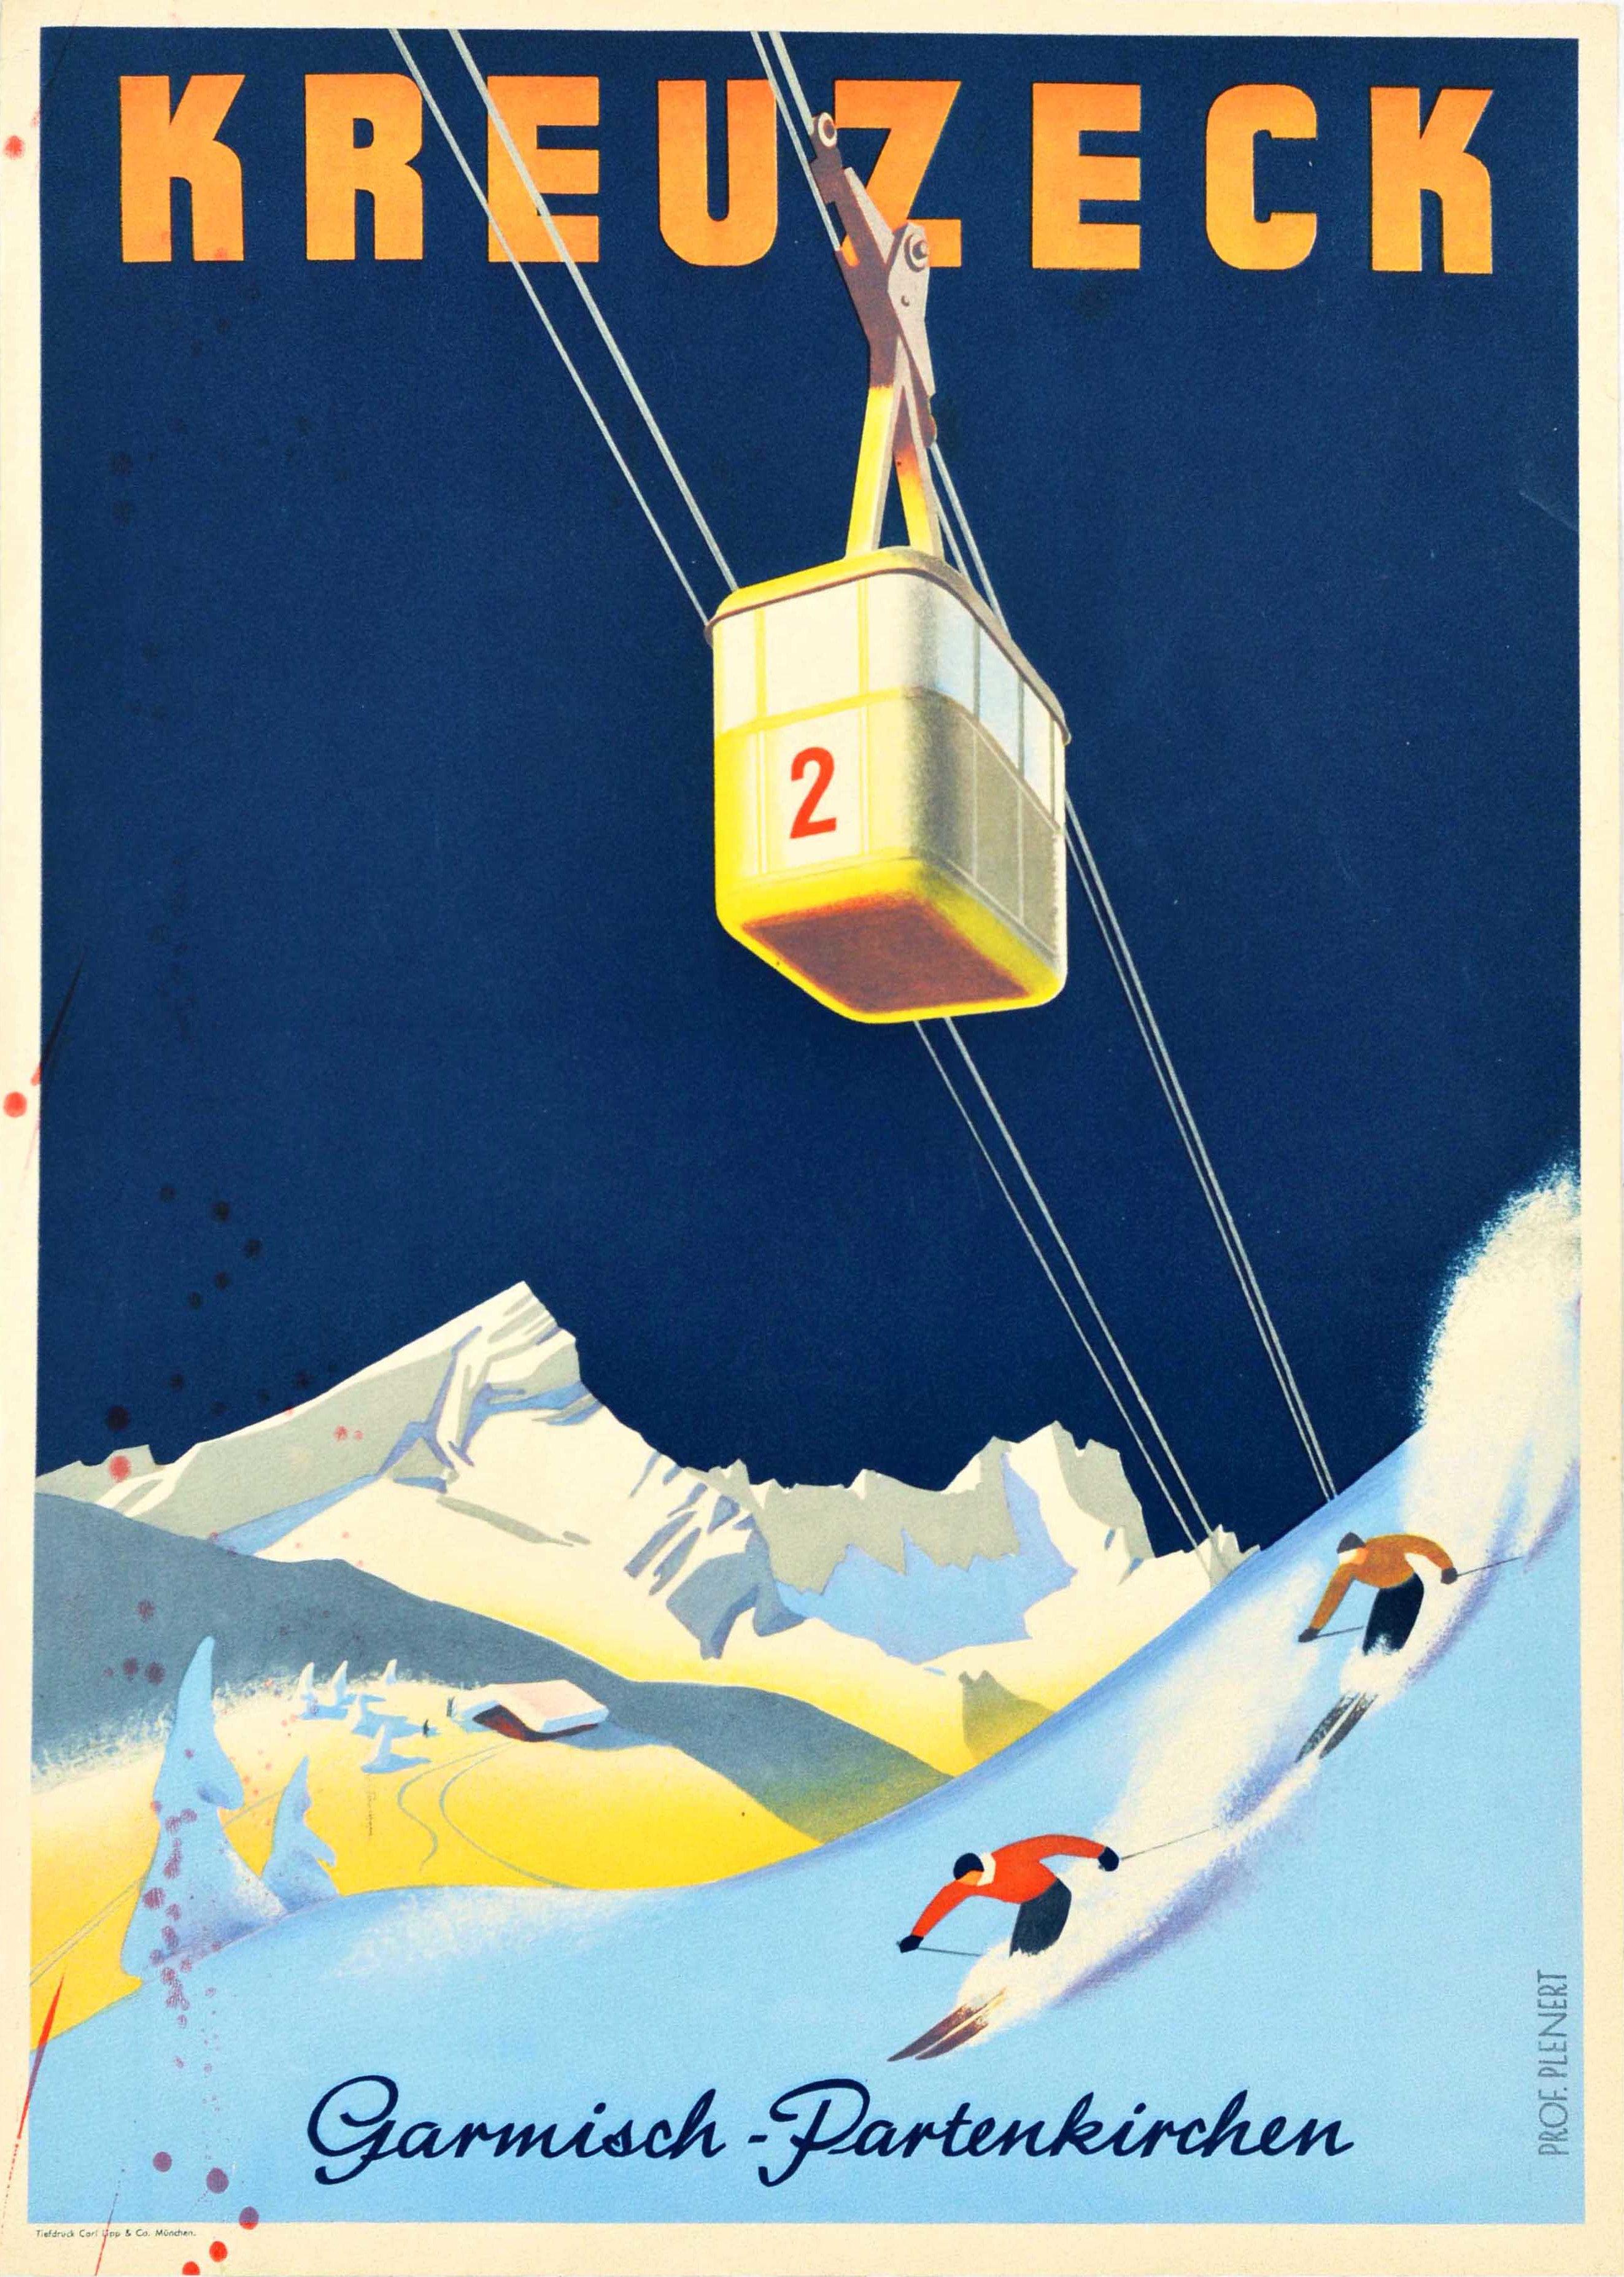 Unknown Print - Original Vintage Ski Winter Sport Travel Poster Kreuzeck Garmisch Partenkirchen